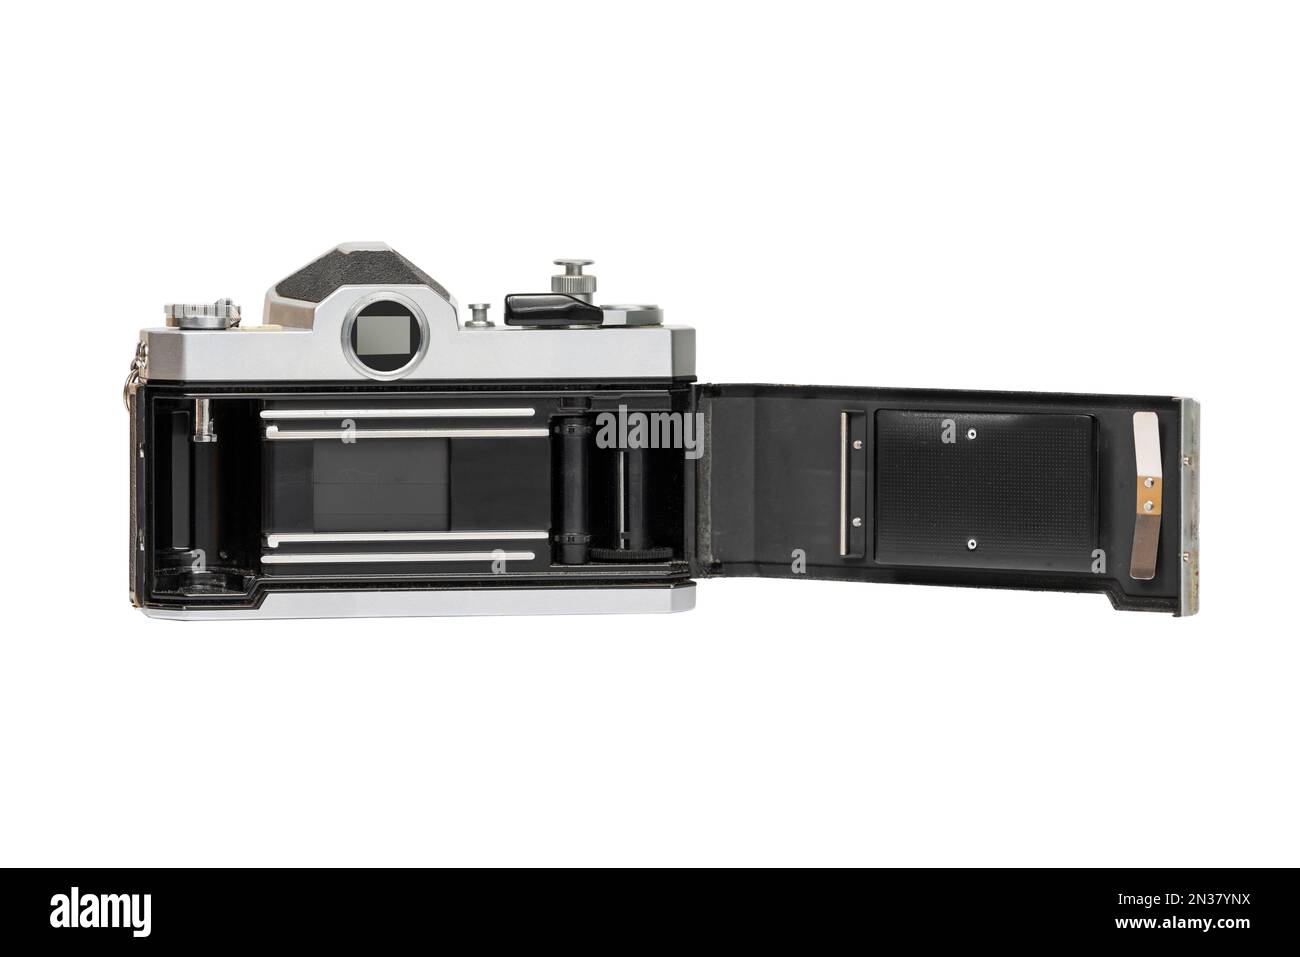 Die Anleitungsansicht zeigt Filmkammer, Verschluss mit Führungsschienen, Filmaufnahmespule und Druckplatte auf der Kamerarückseite. Stockfoto